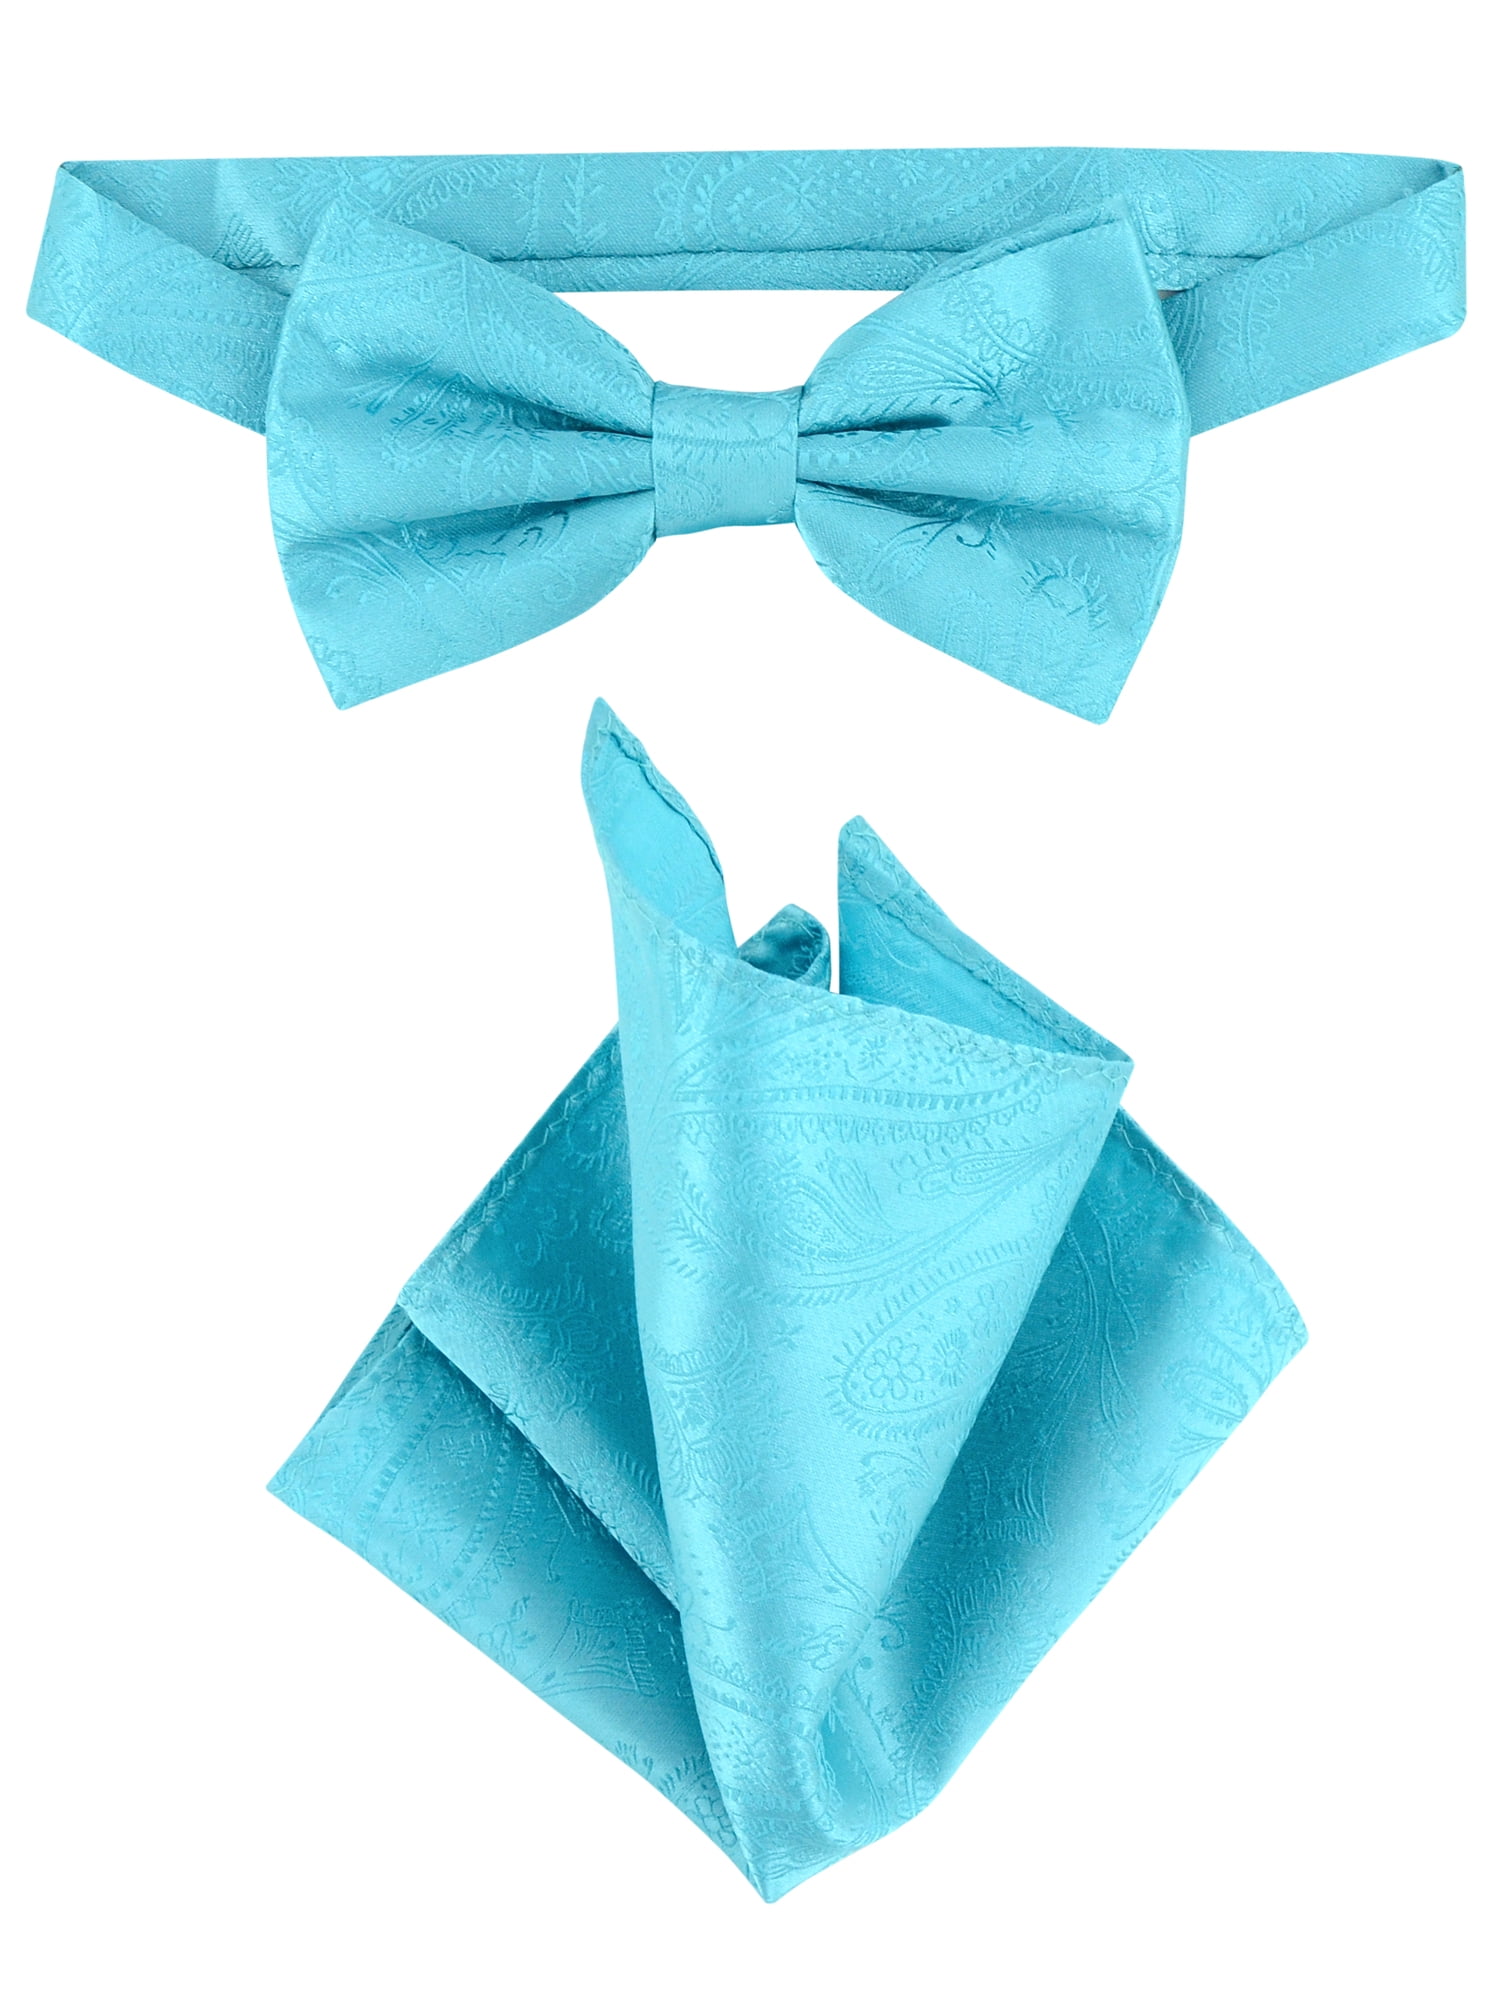 New in box Vesuvio Napoli men's self tie bow tie 100% silk formal prom aqua blue